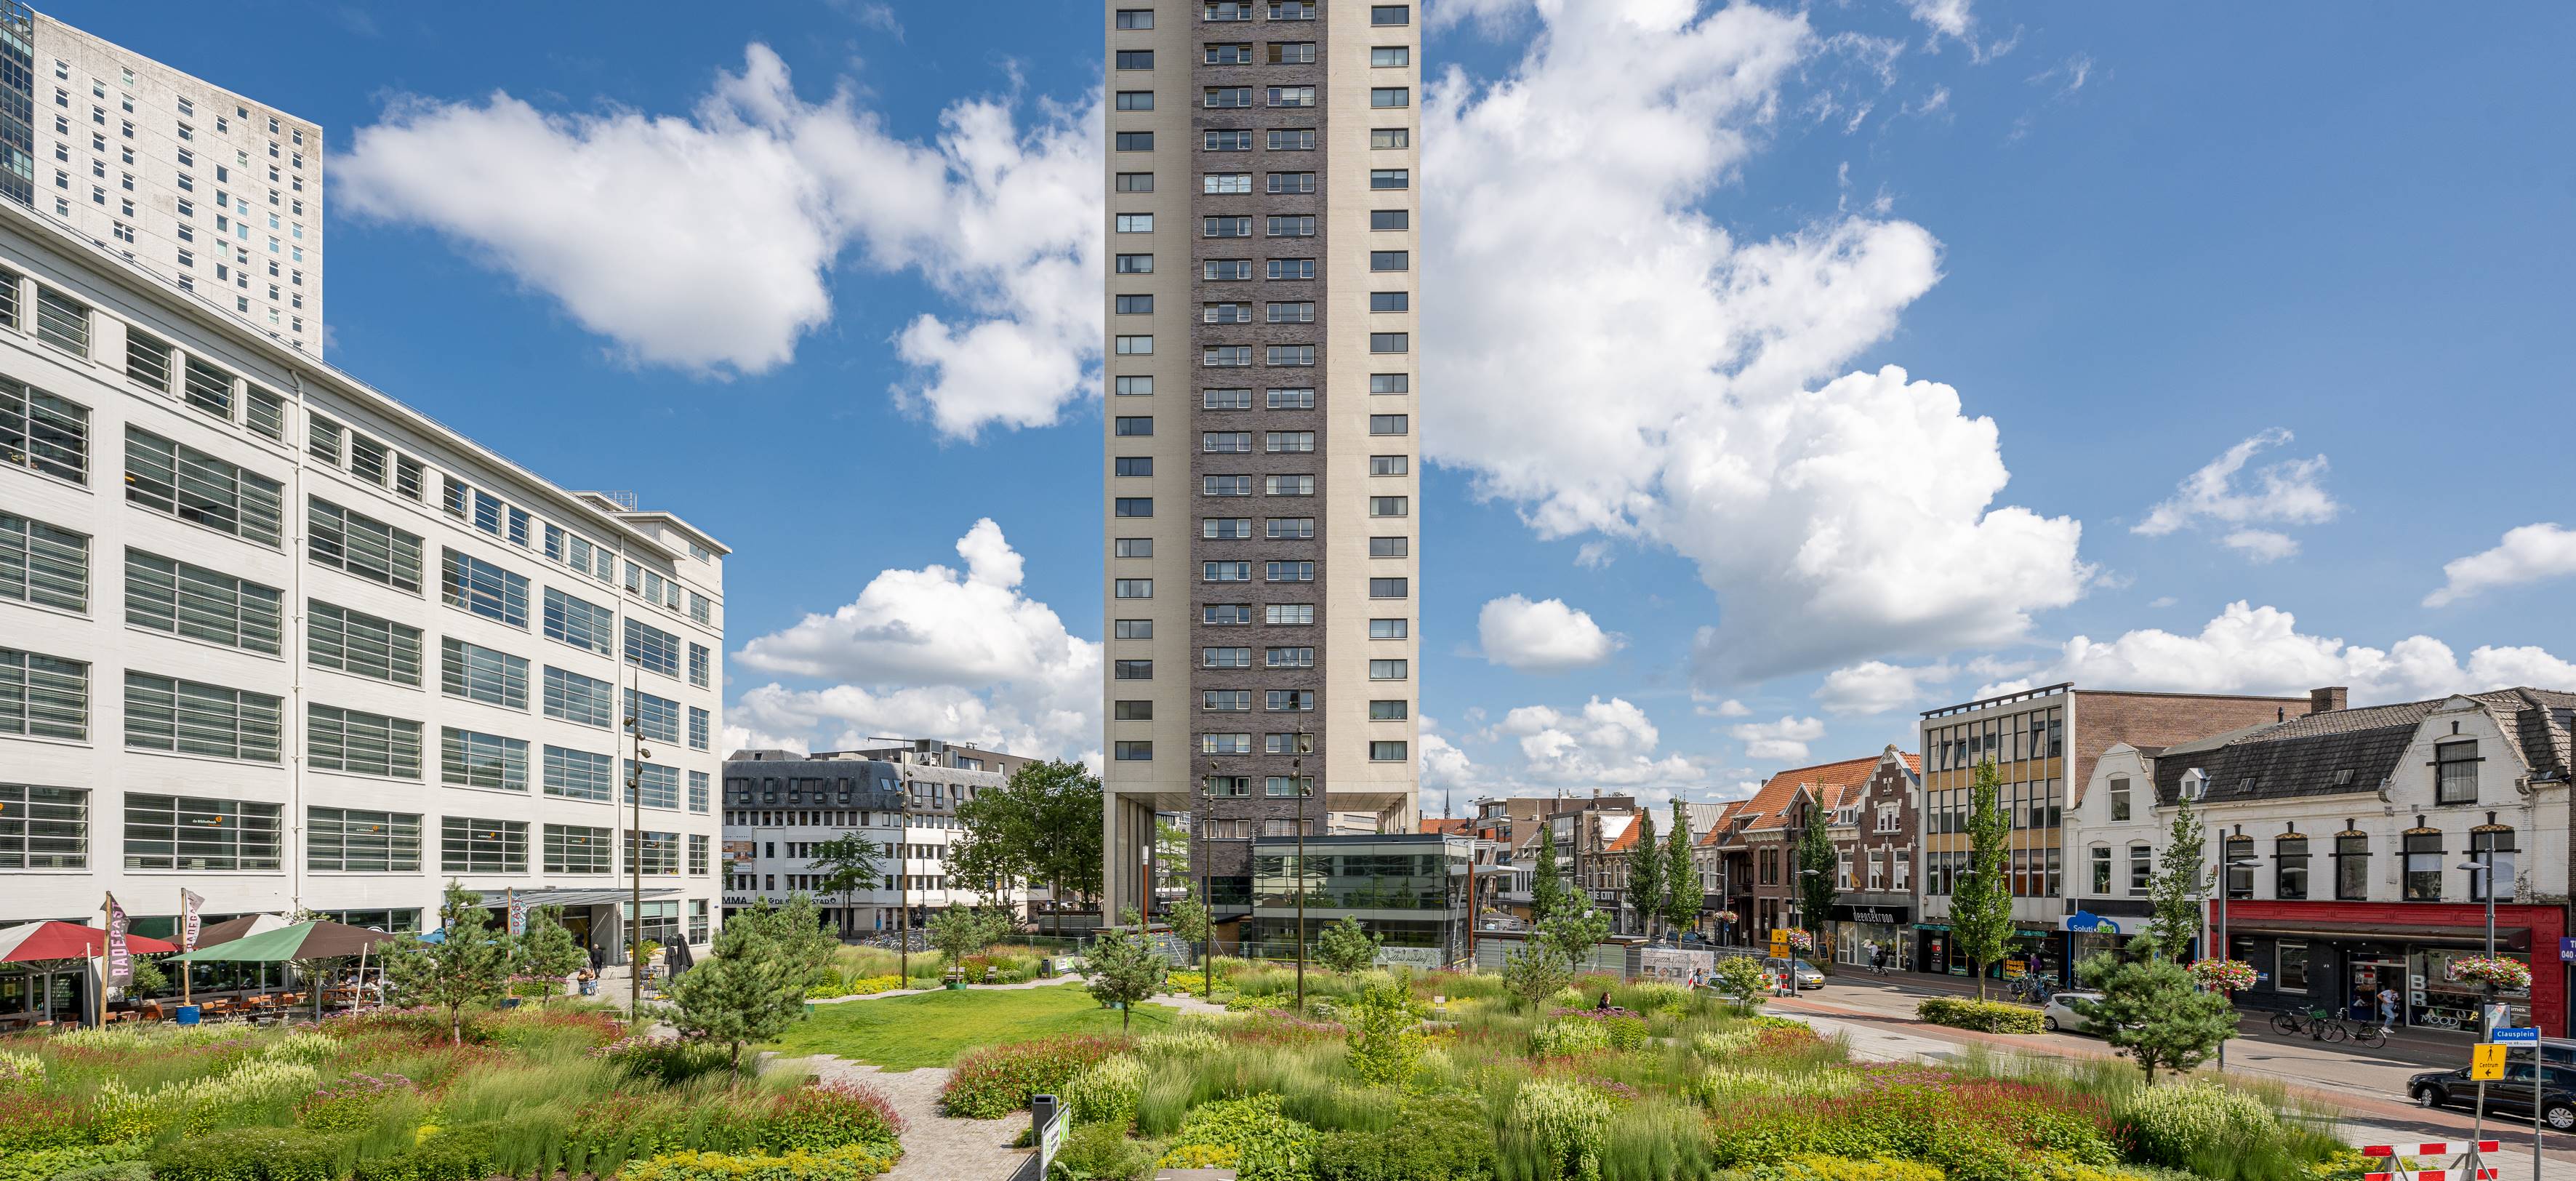 Clausplein, Eindhoven - Een klimaatbestendig stadsplein die inspeelt op de lokale ecologie 